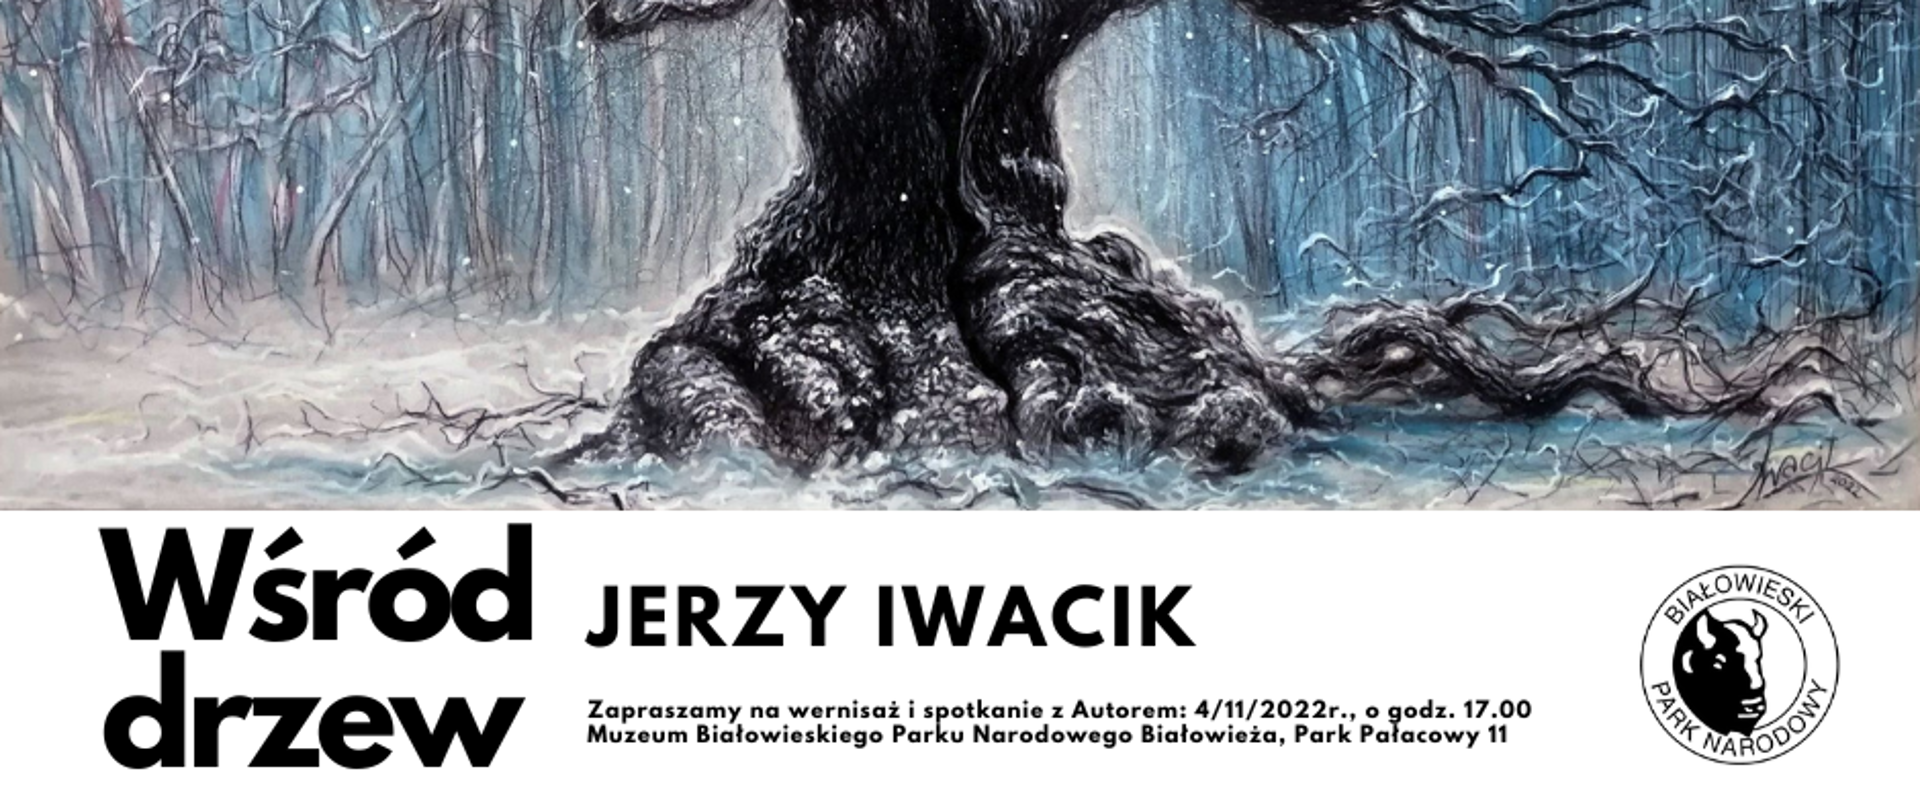 Grafika drzewa pod nią informacja o wystawie i logo Białowieskiego Parku Narodowego